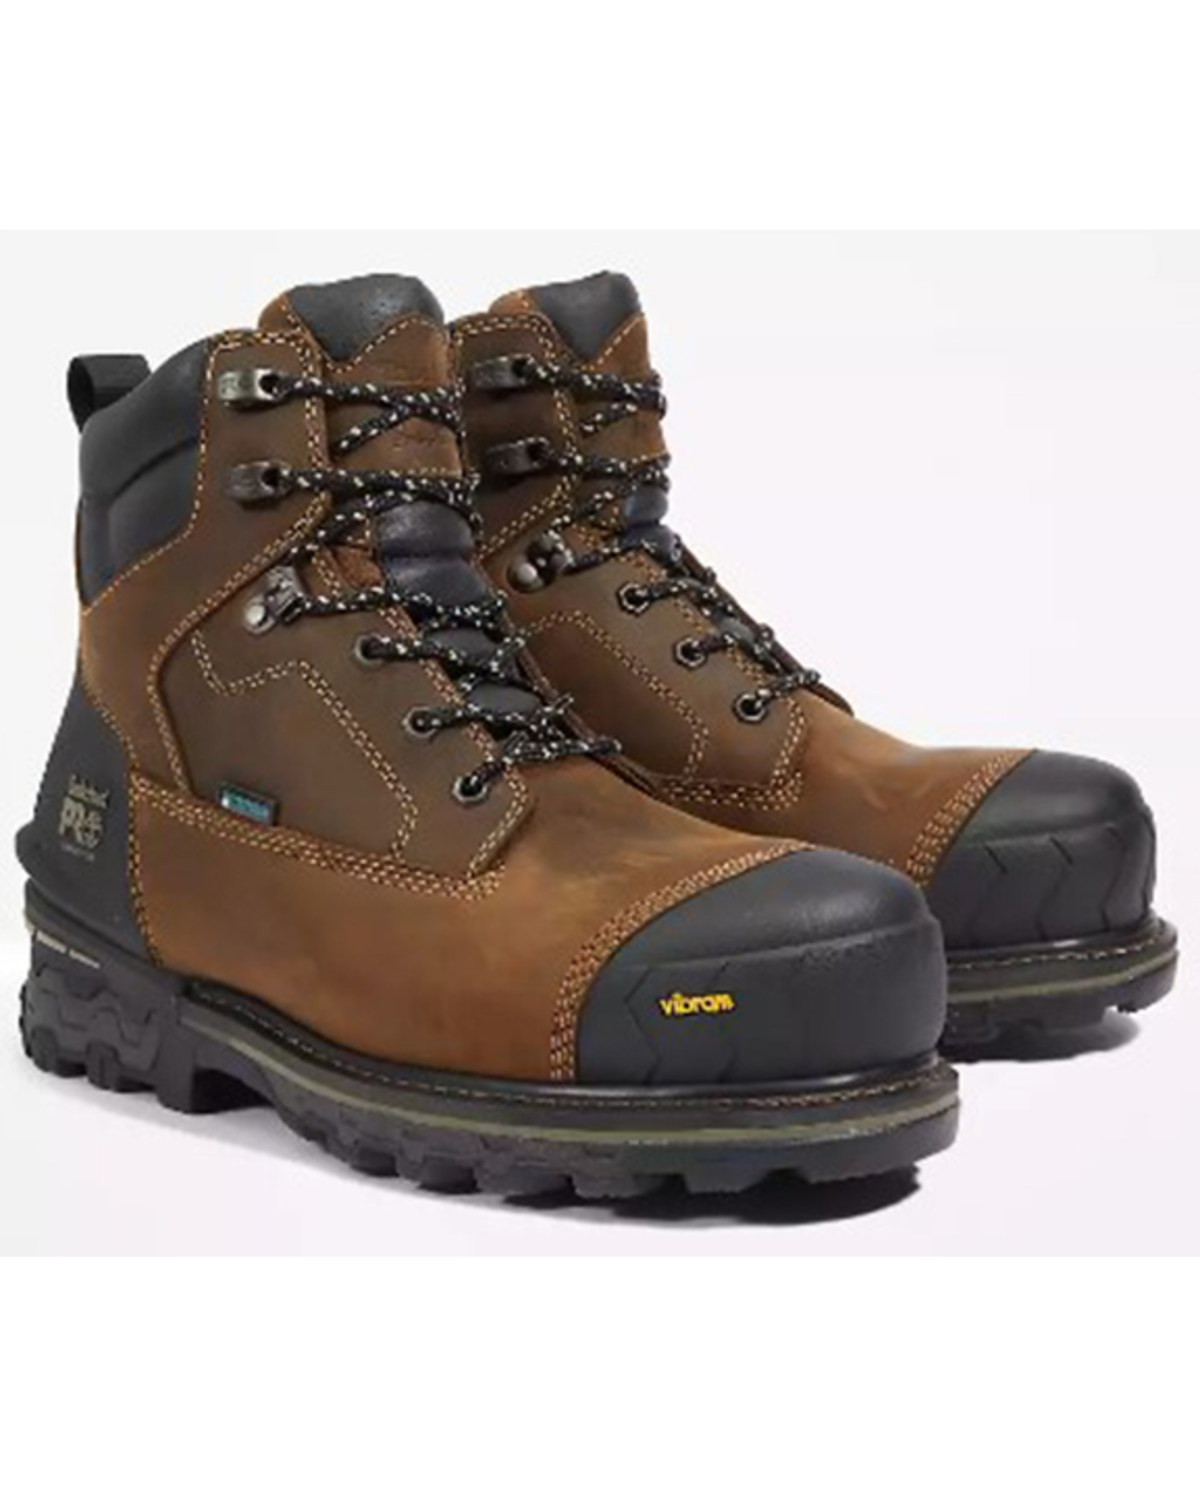 Timberland Pro Men's 6" Boondock HD Waterproof Work Boots - Composite Toe